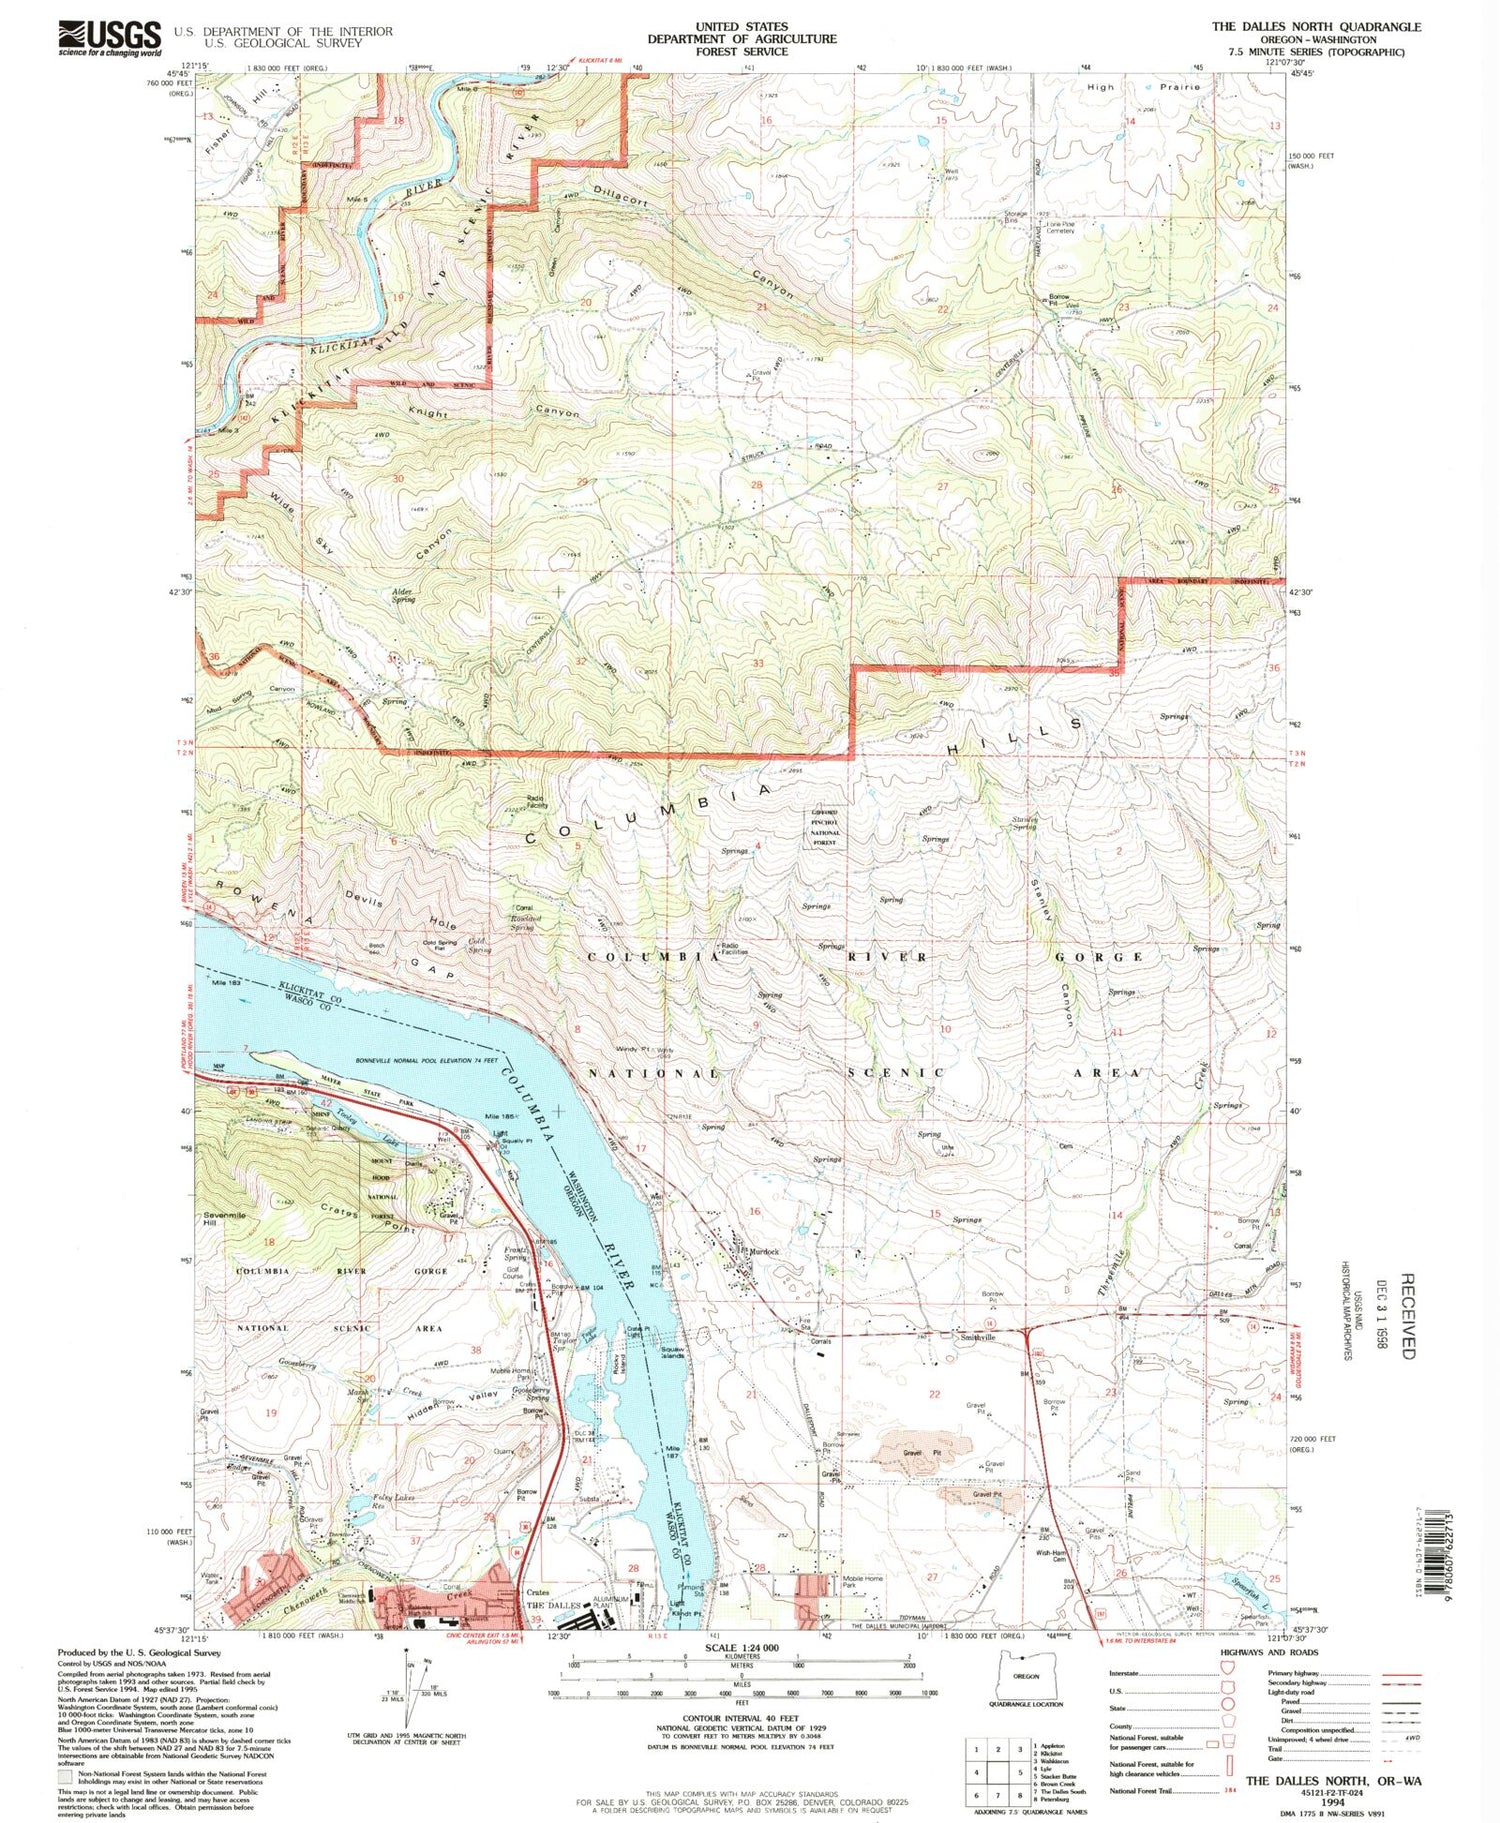 Classic USGS The Dalles North Oregon 7.5'x7.5' Topo Map Image